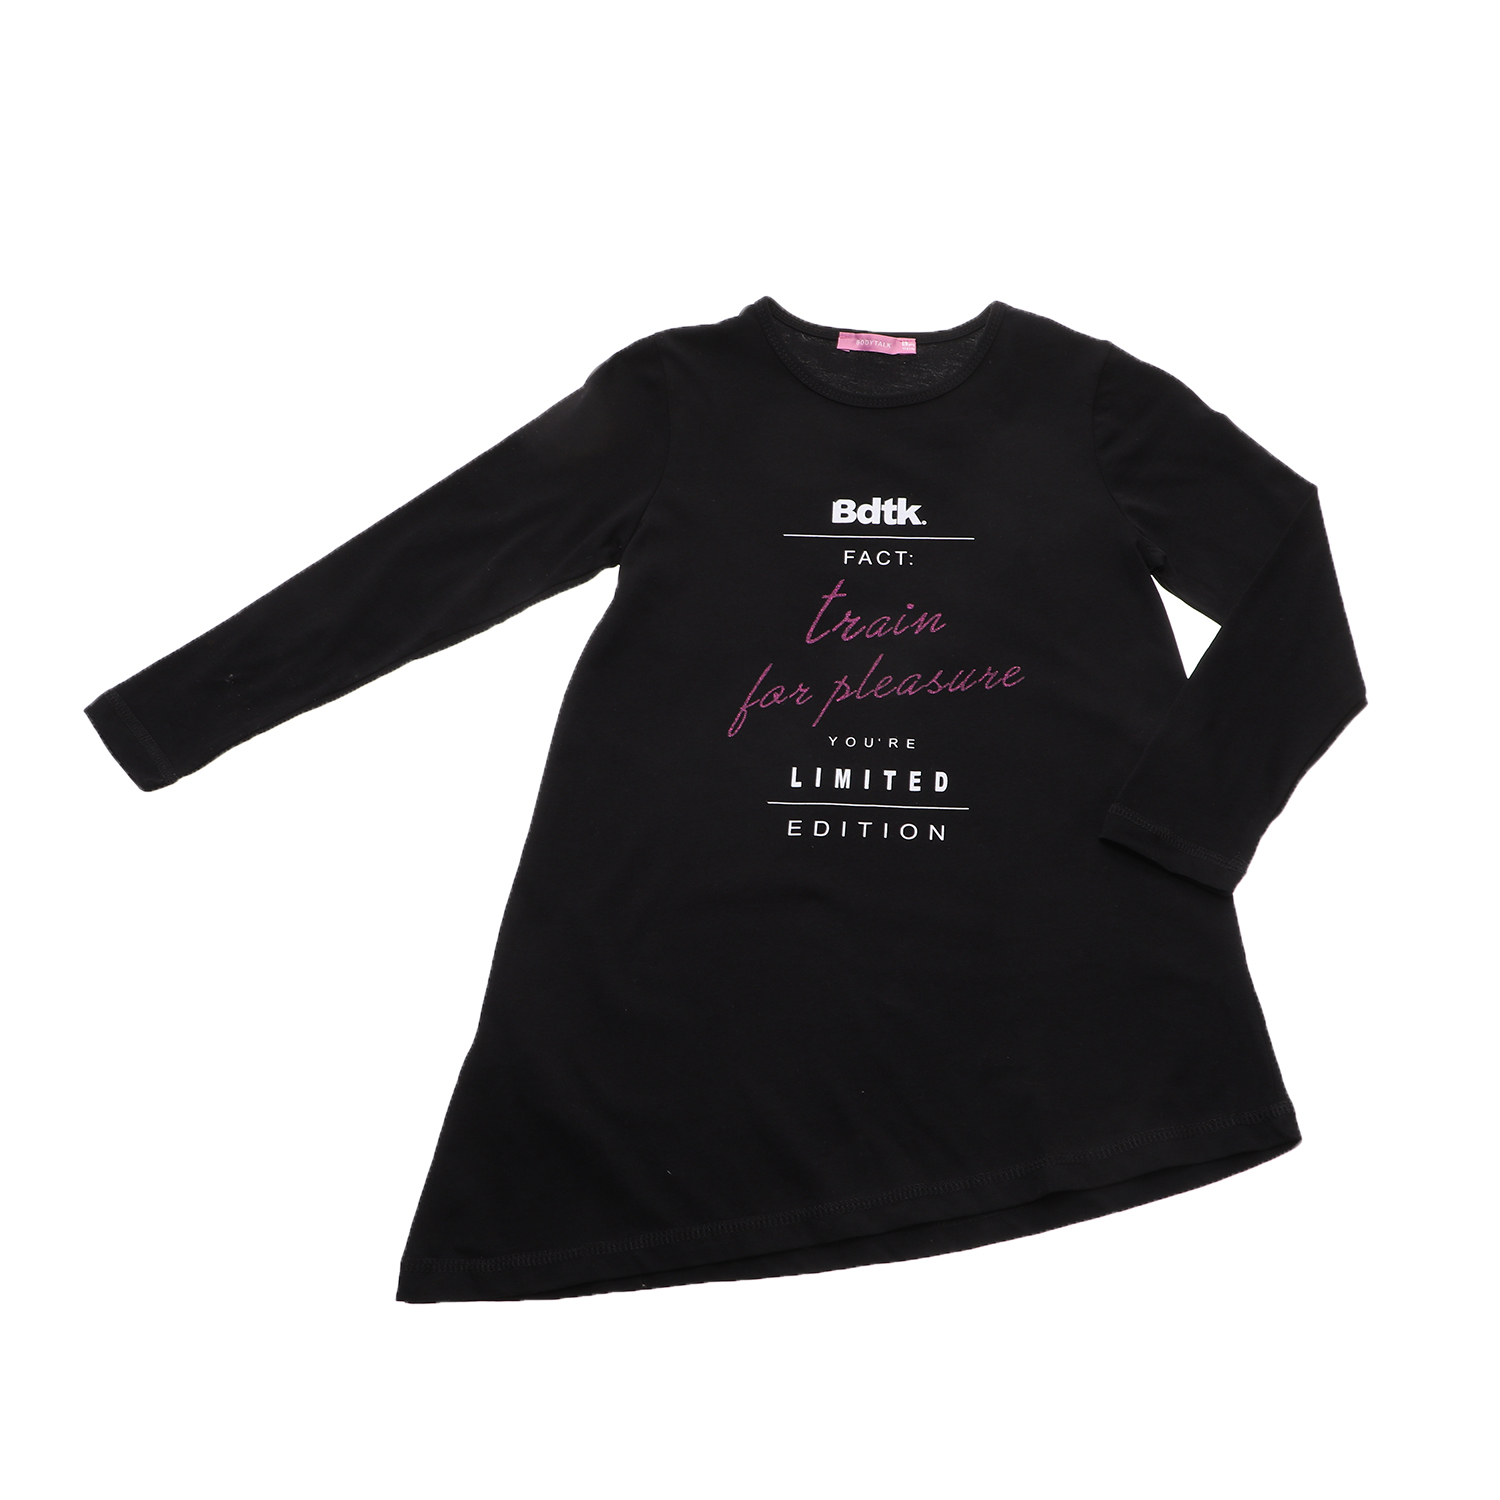 Παιδικά/Girls/Ρούχα/Μπλούζες Μακρυμάνικες BODY TALK - Παιδική μπλούζα BODYTALK μαύρη